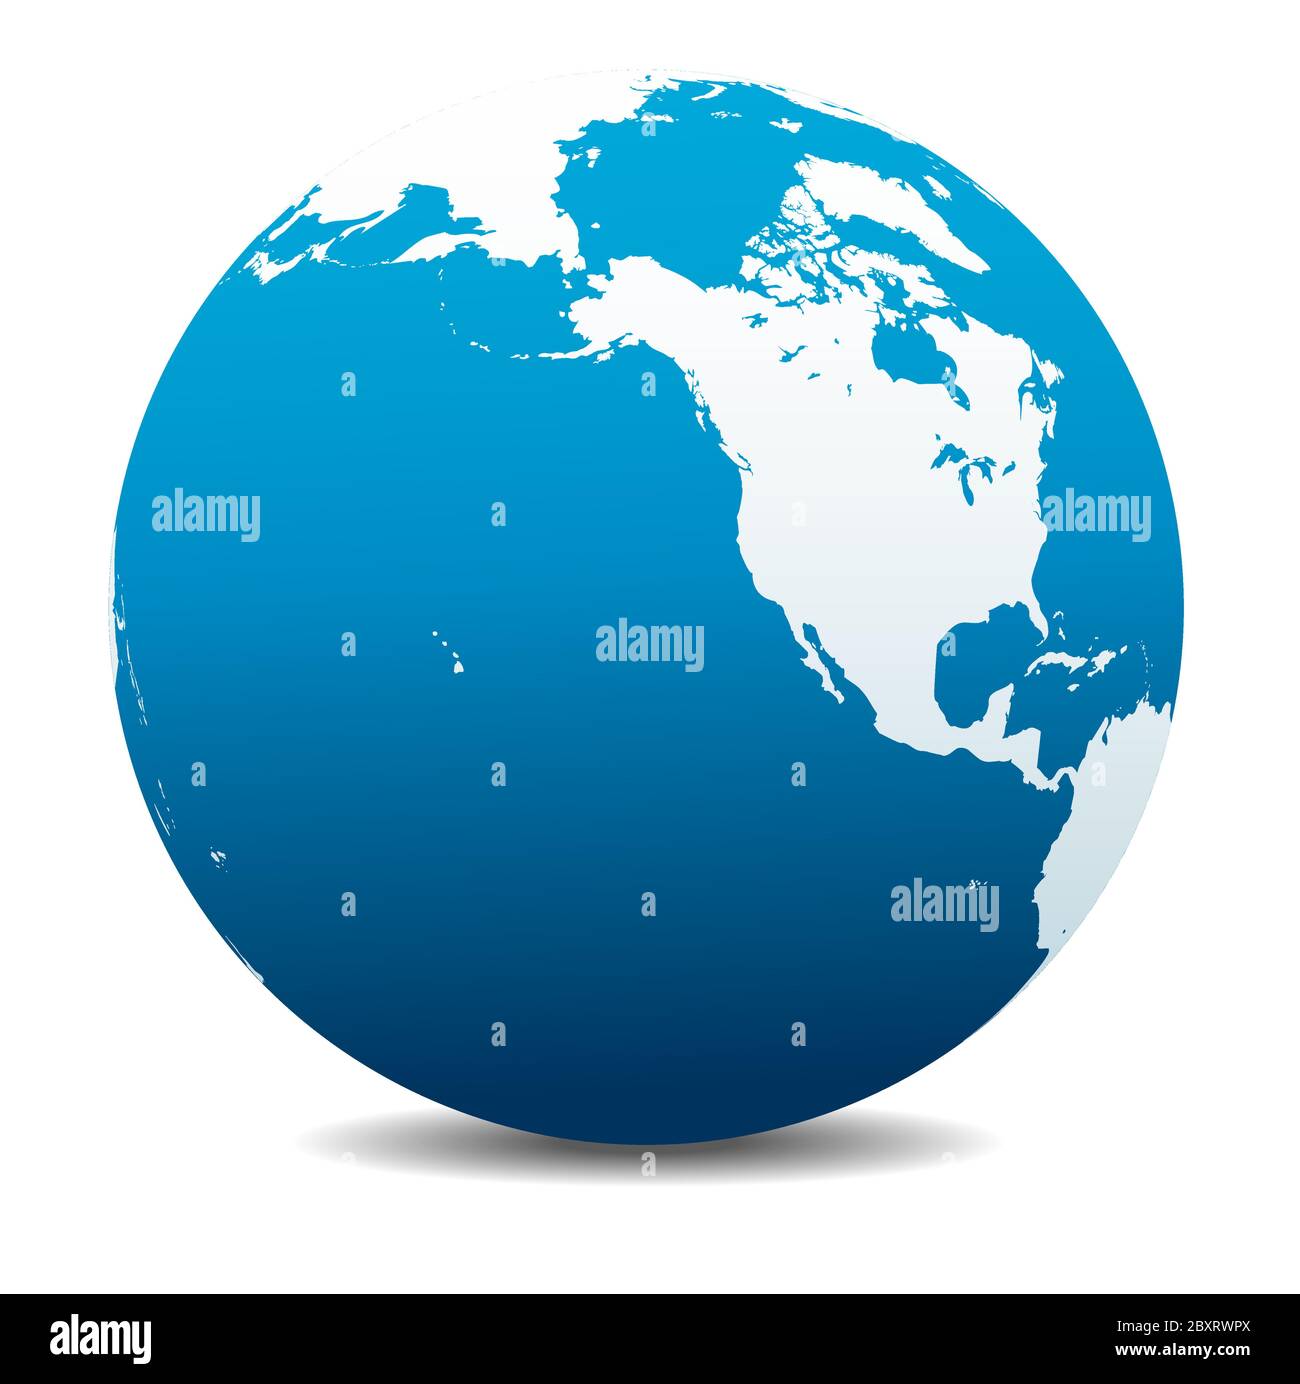 Amérique du Nord, Canada, Sibérie et Hawaï. Icône carte vectorielle du globe terrestre, Terre. Tous les éléments se trouvent sur des calques individuels dans le fichier vectoriel. Illustration de Vecteur